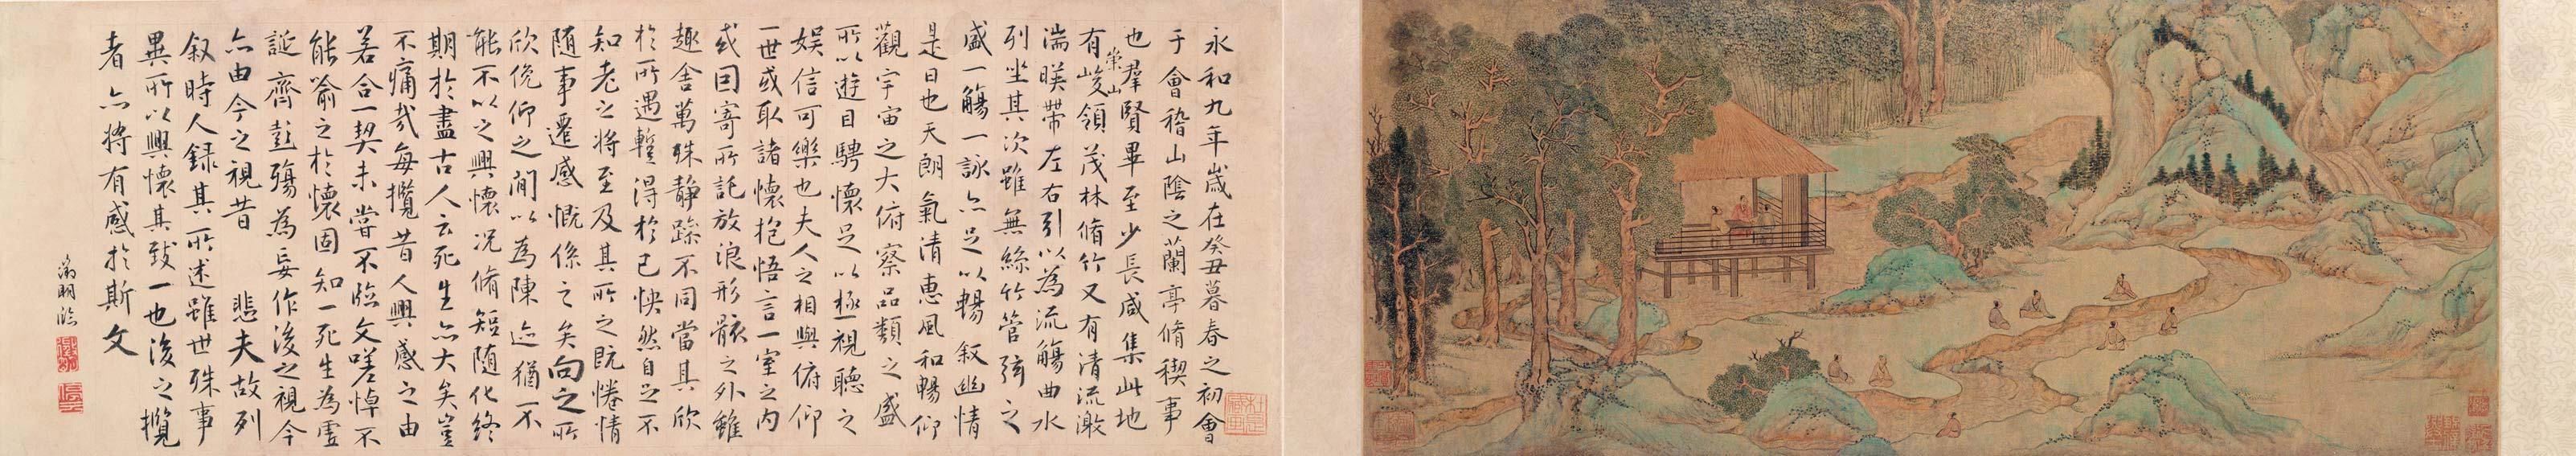 明 文徵明 蘭亭修禊圖 北京故宮博物院藏